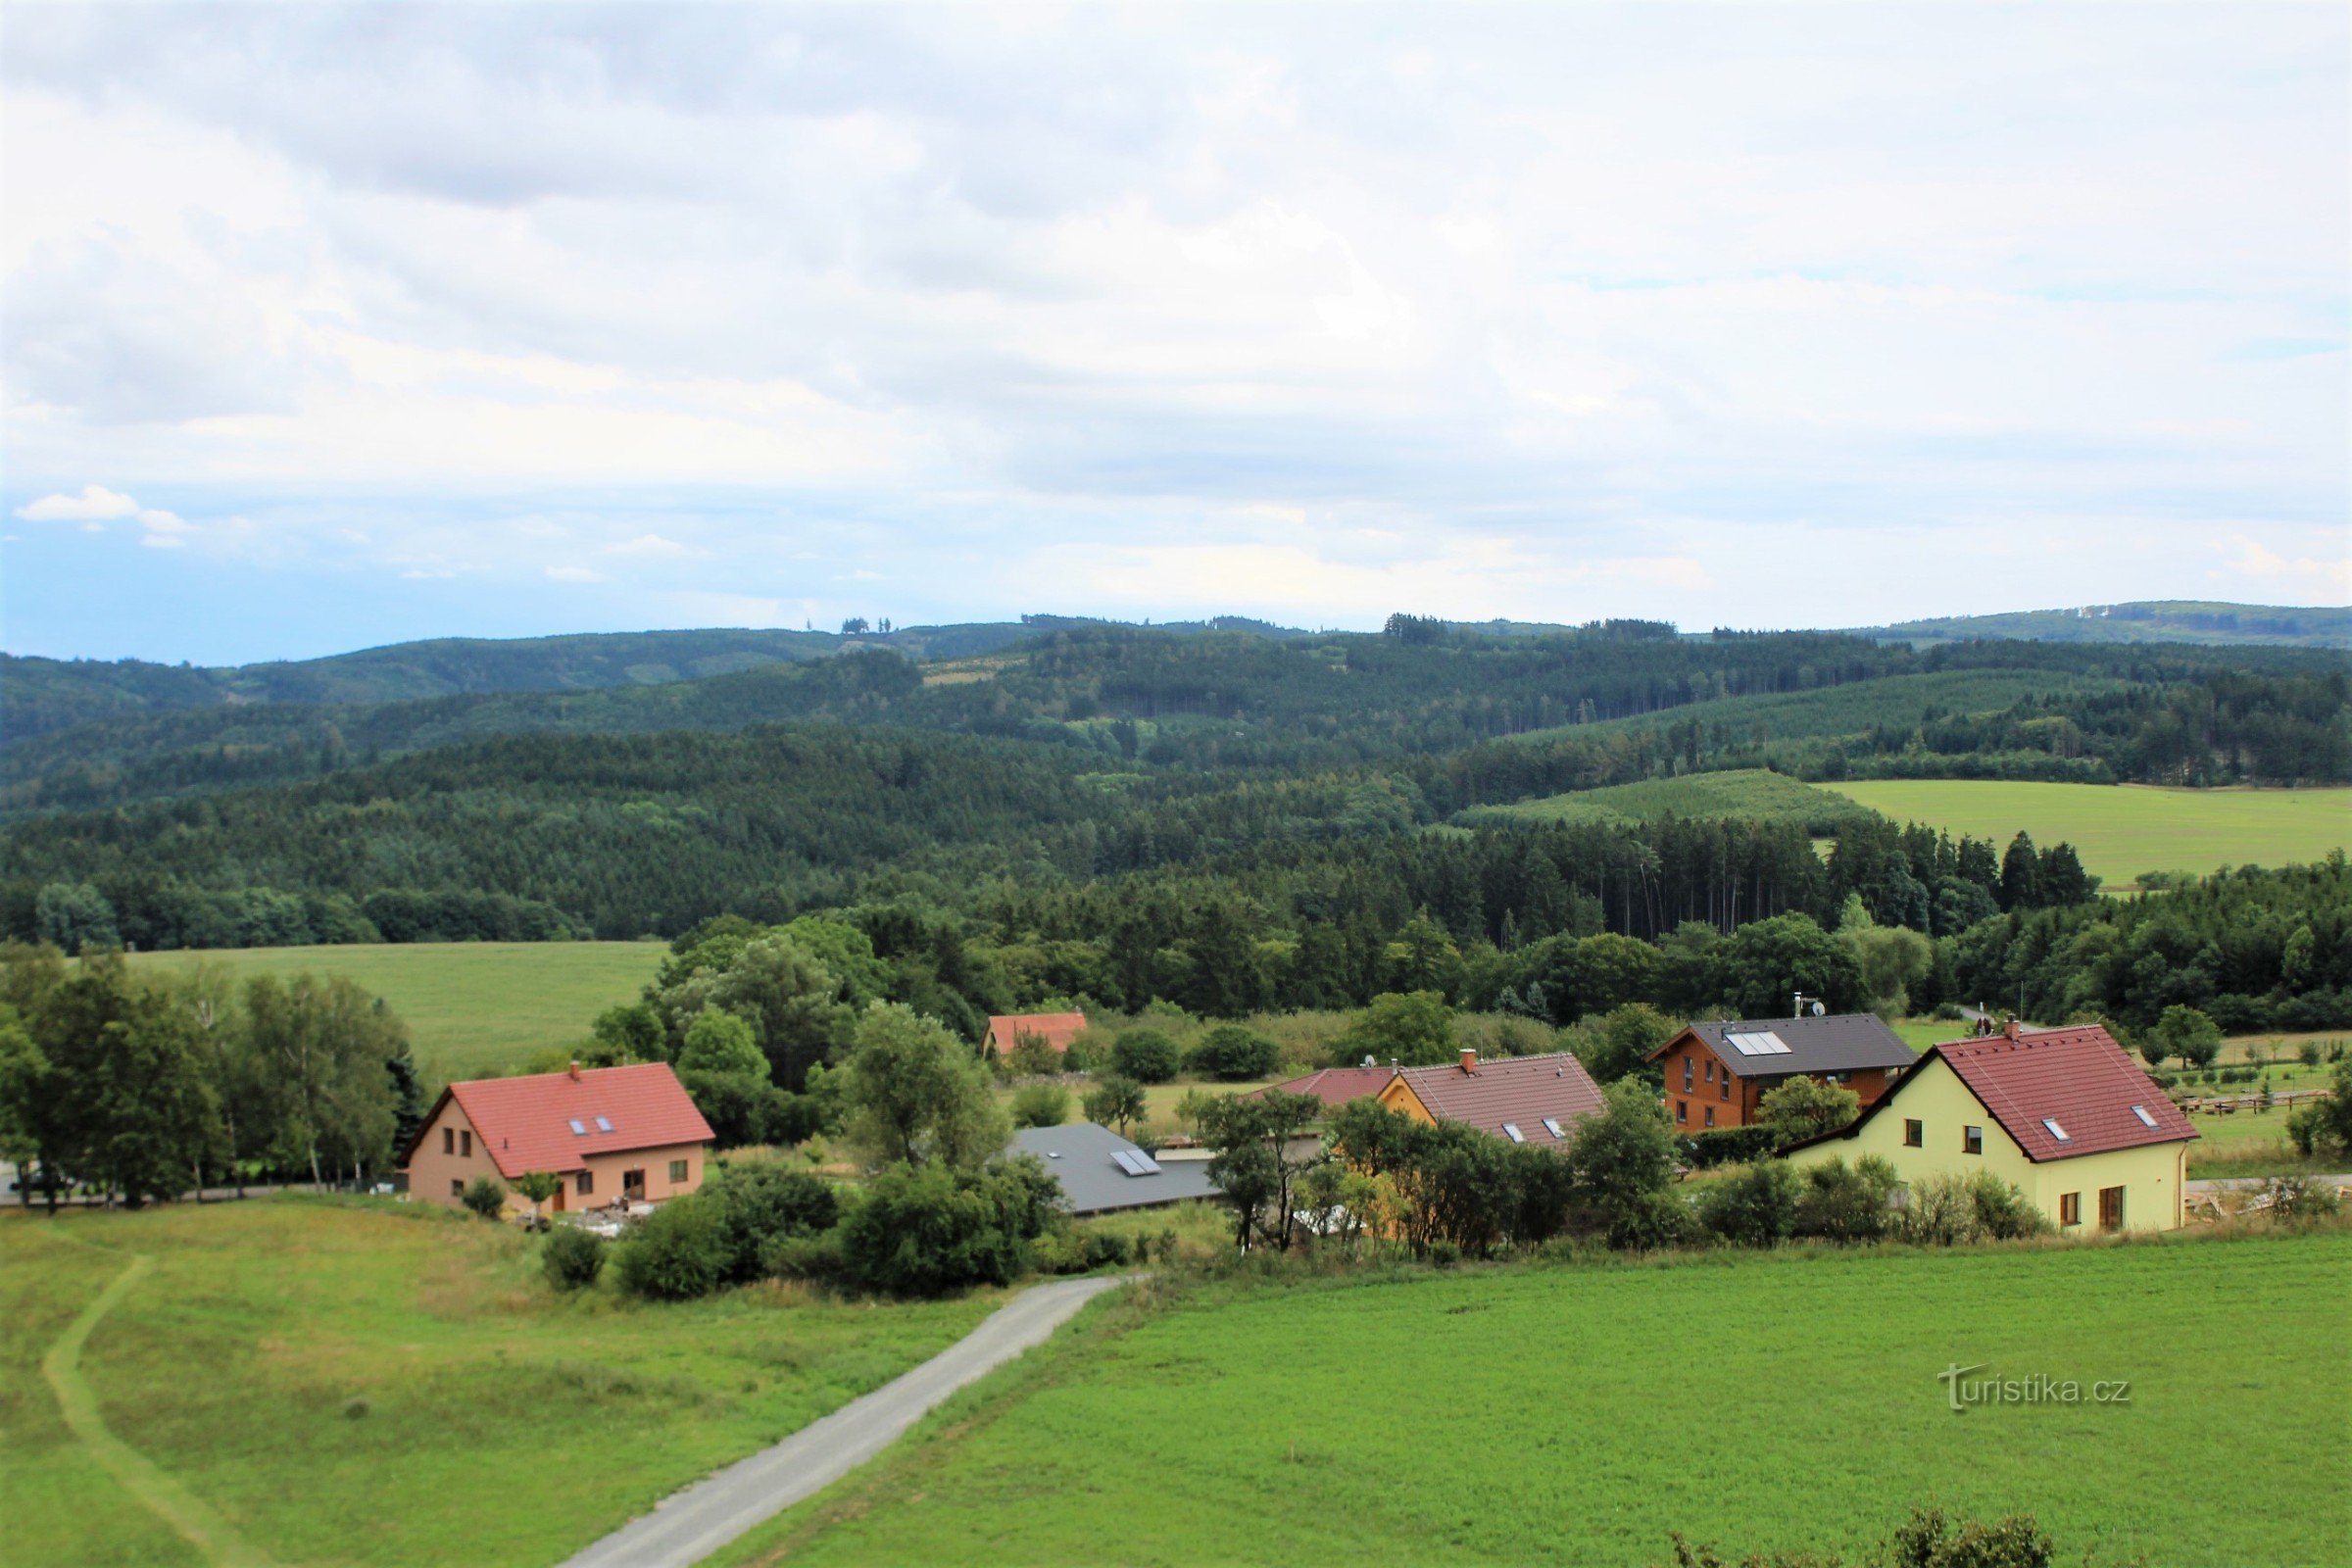 Udsigt fra udsigtstårnet over den øverste del af landsbyen mod Hořický hřbet